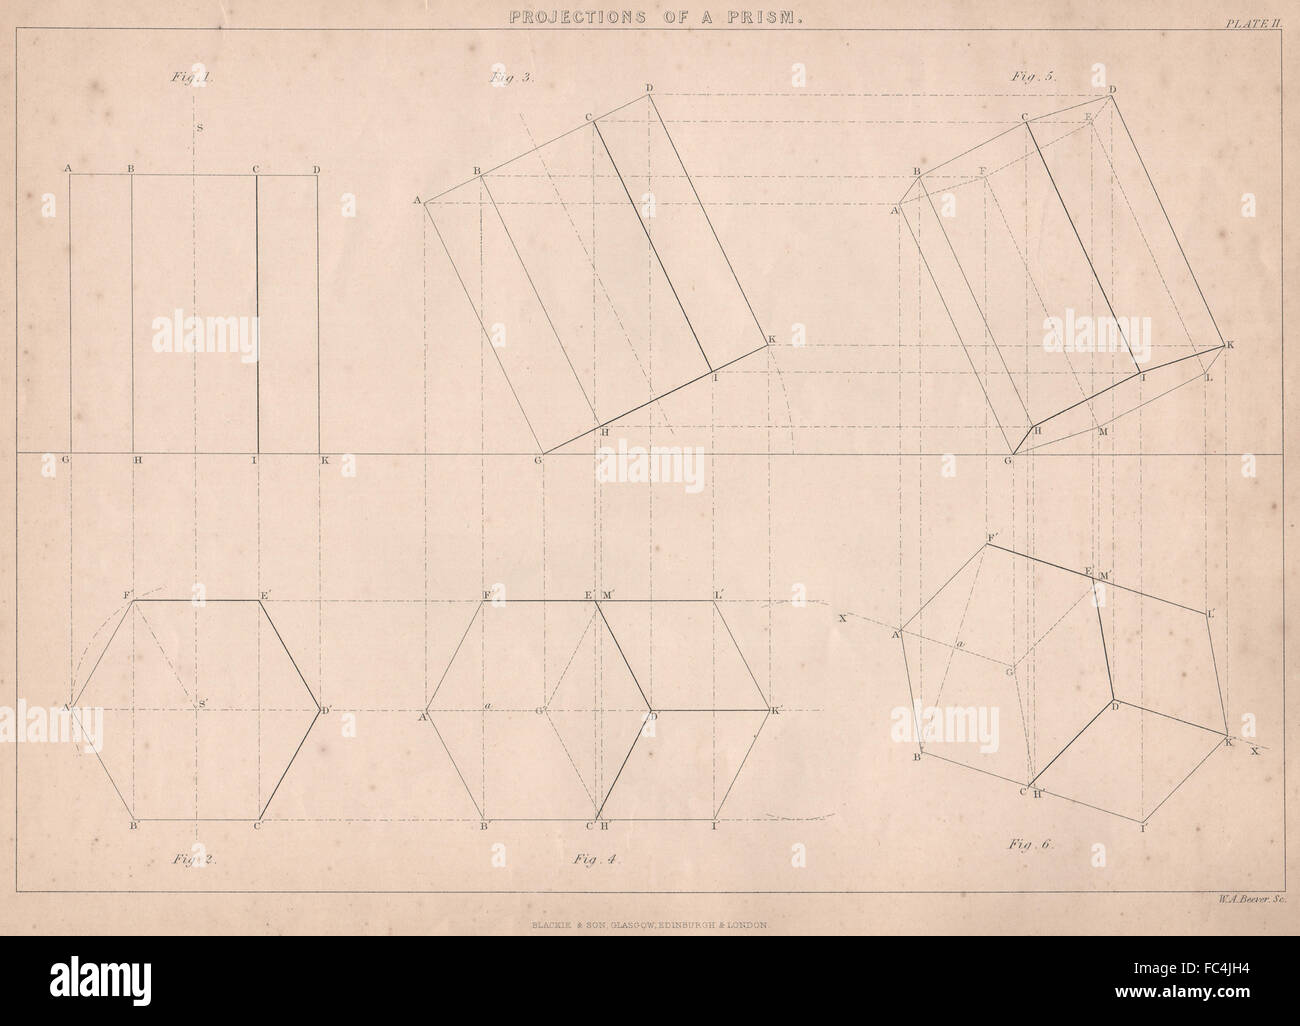 VICTORIAN Engineering Drawing. Le proiezioni di un prisma, antica stampa 1876 Foto Stock